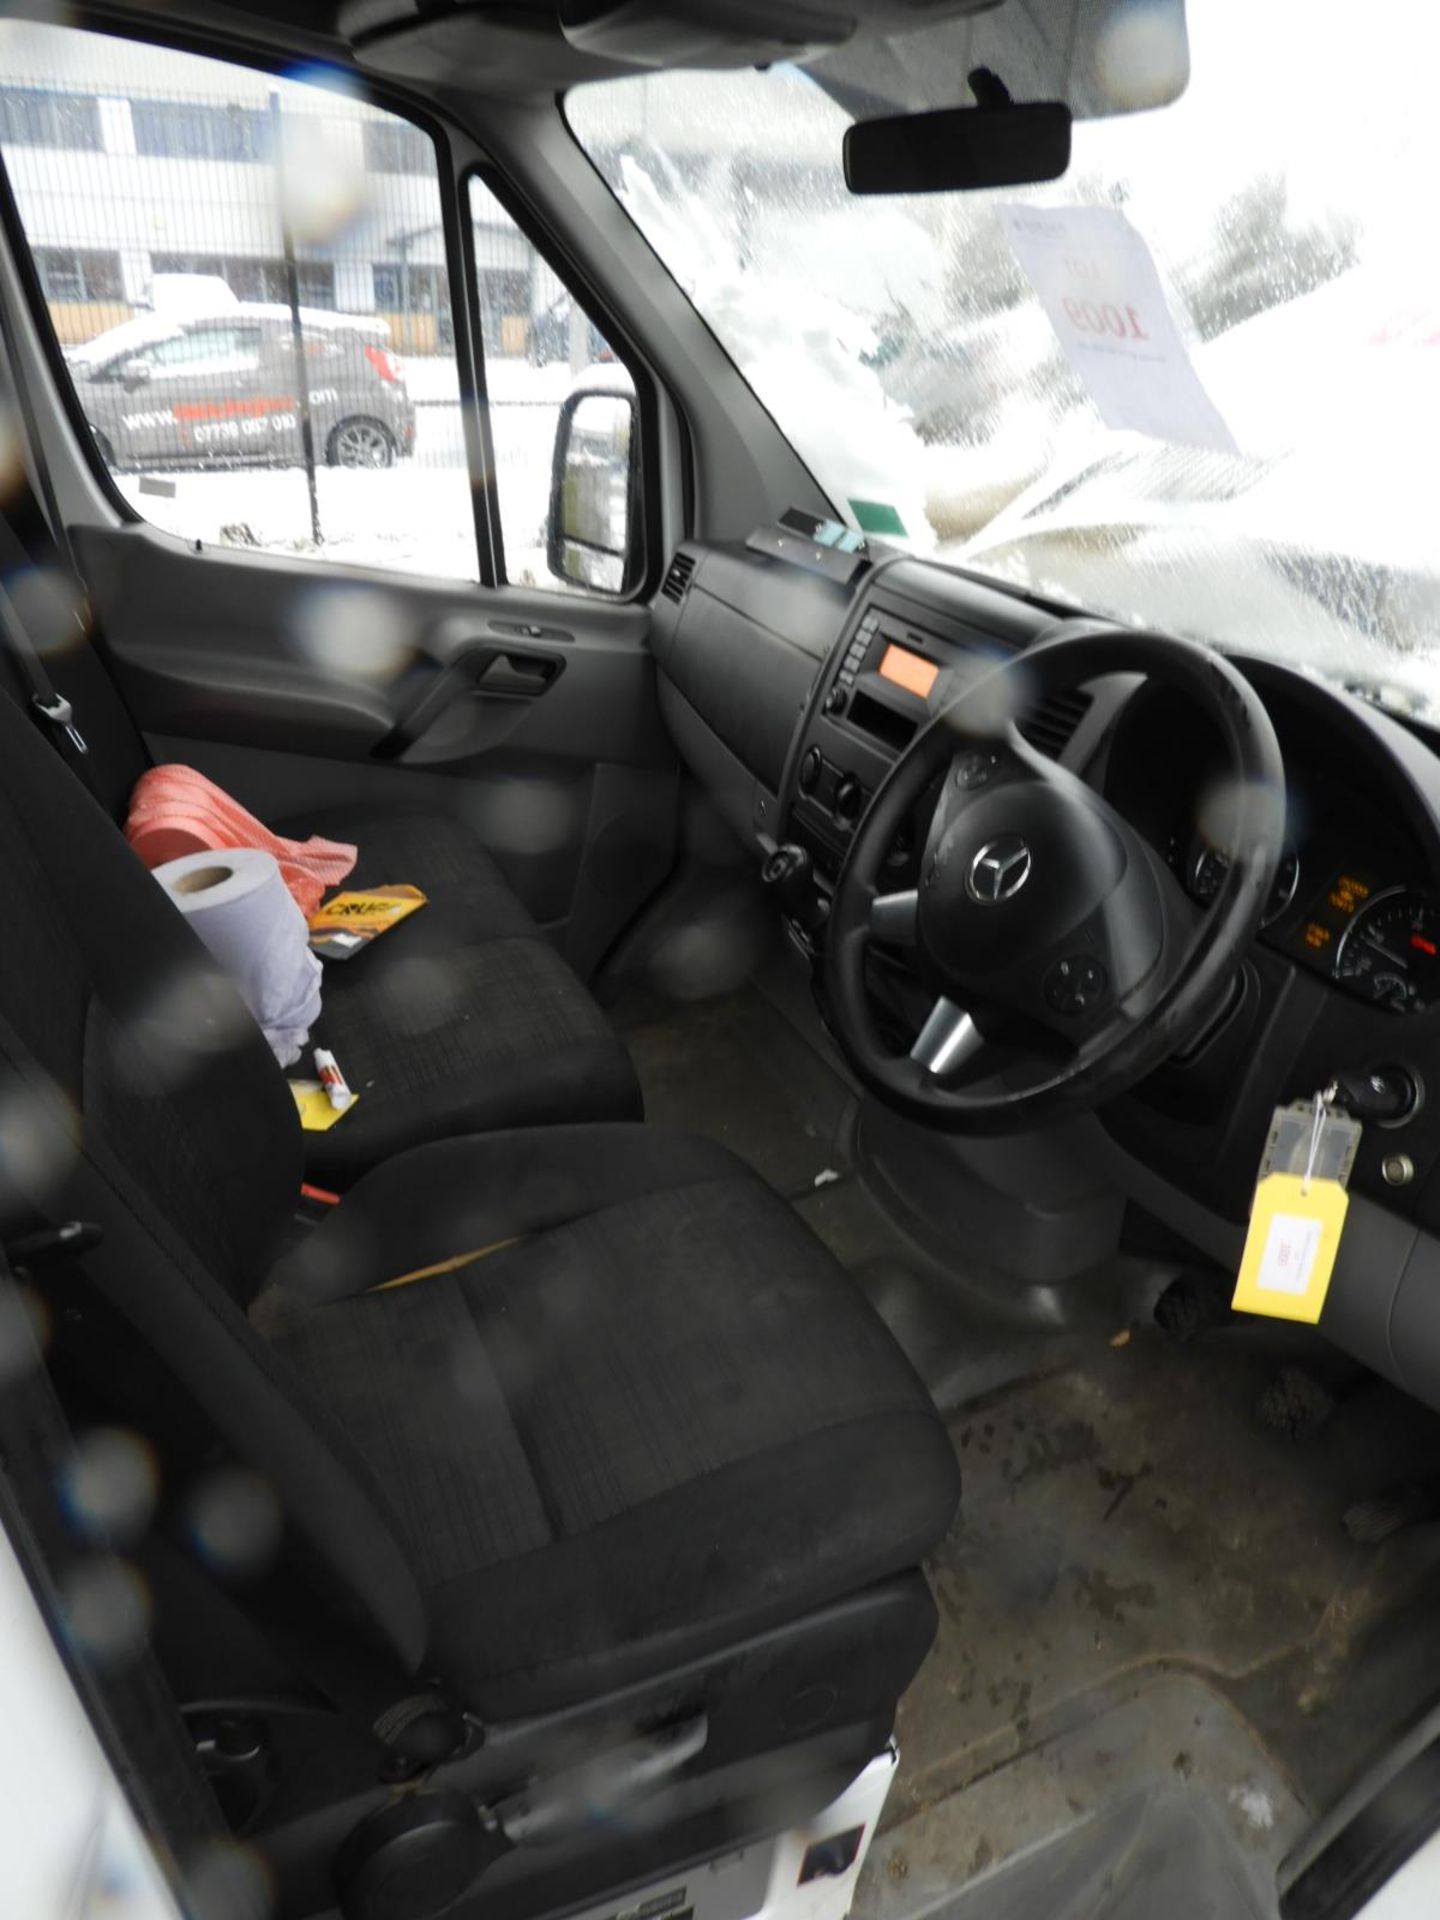 *Mercedes Sprinter Luton Van with Tail Lift Reg: KS66 HMZ, Mileage: 52555 - Image 10 of 14